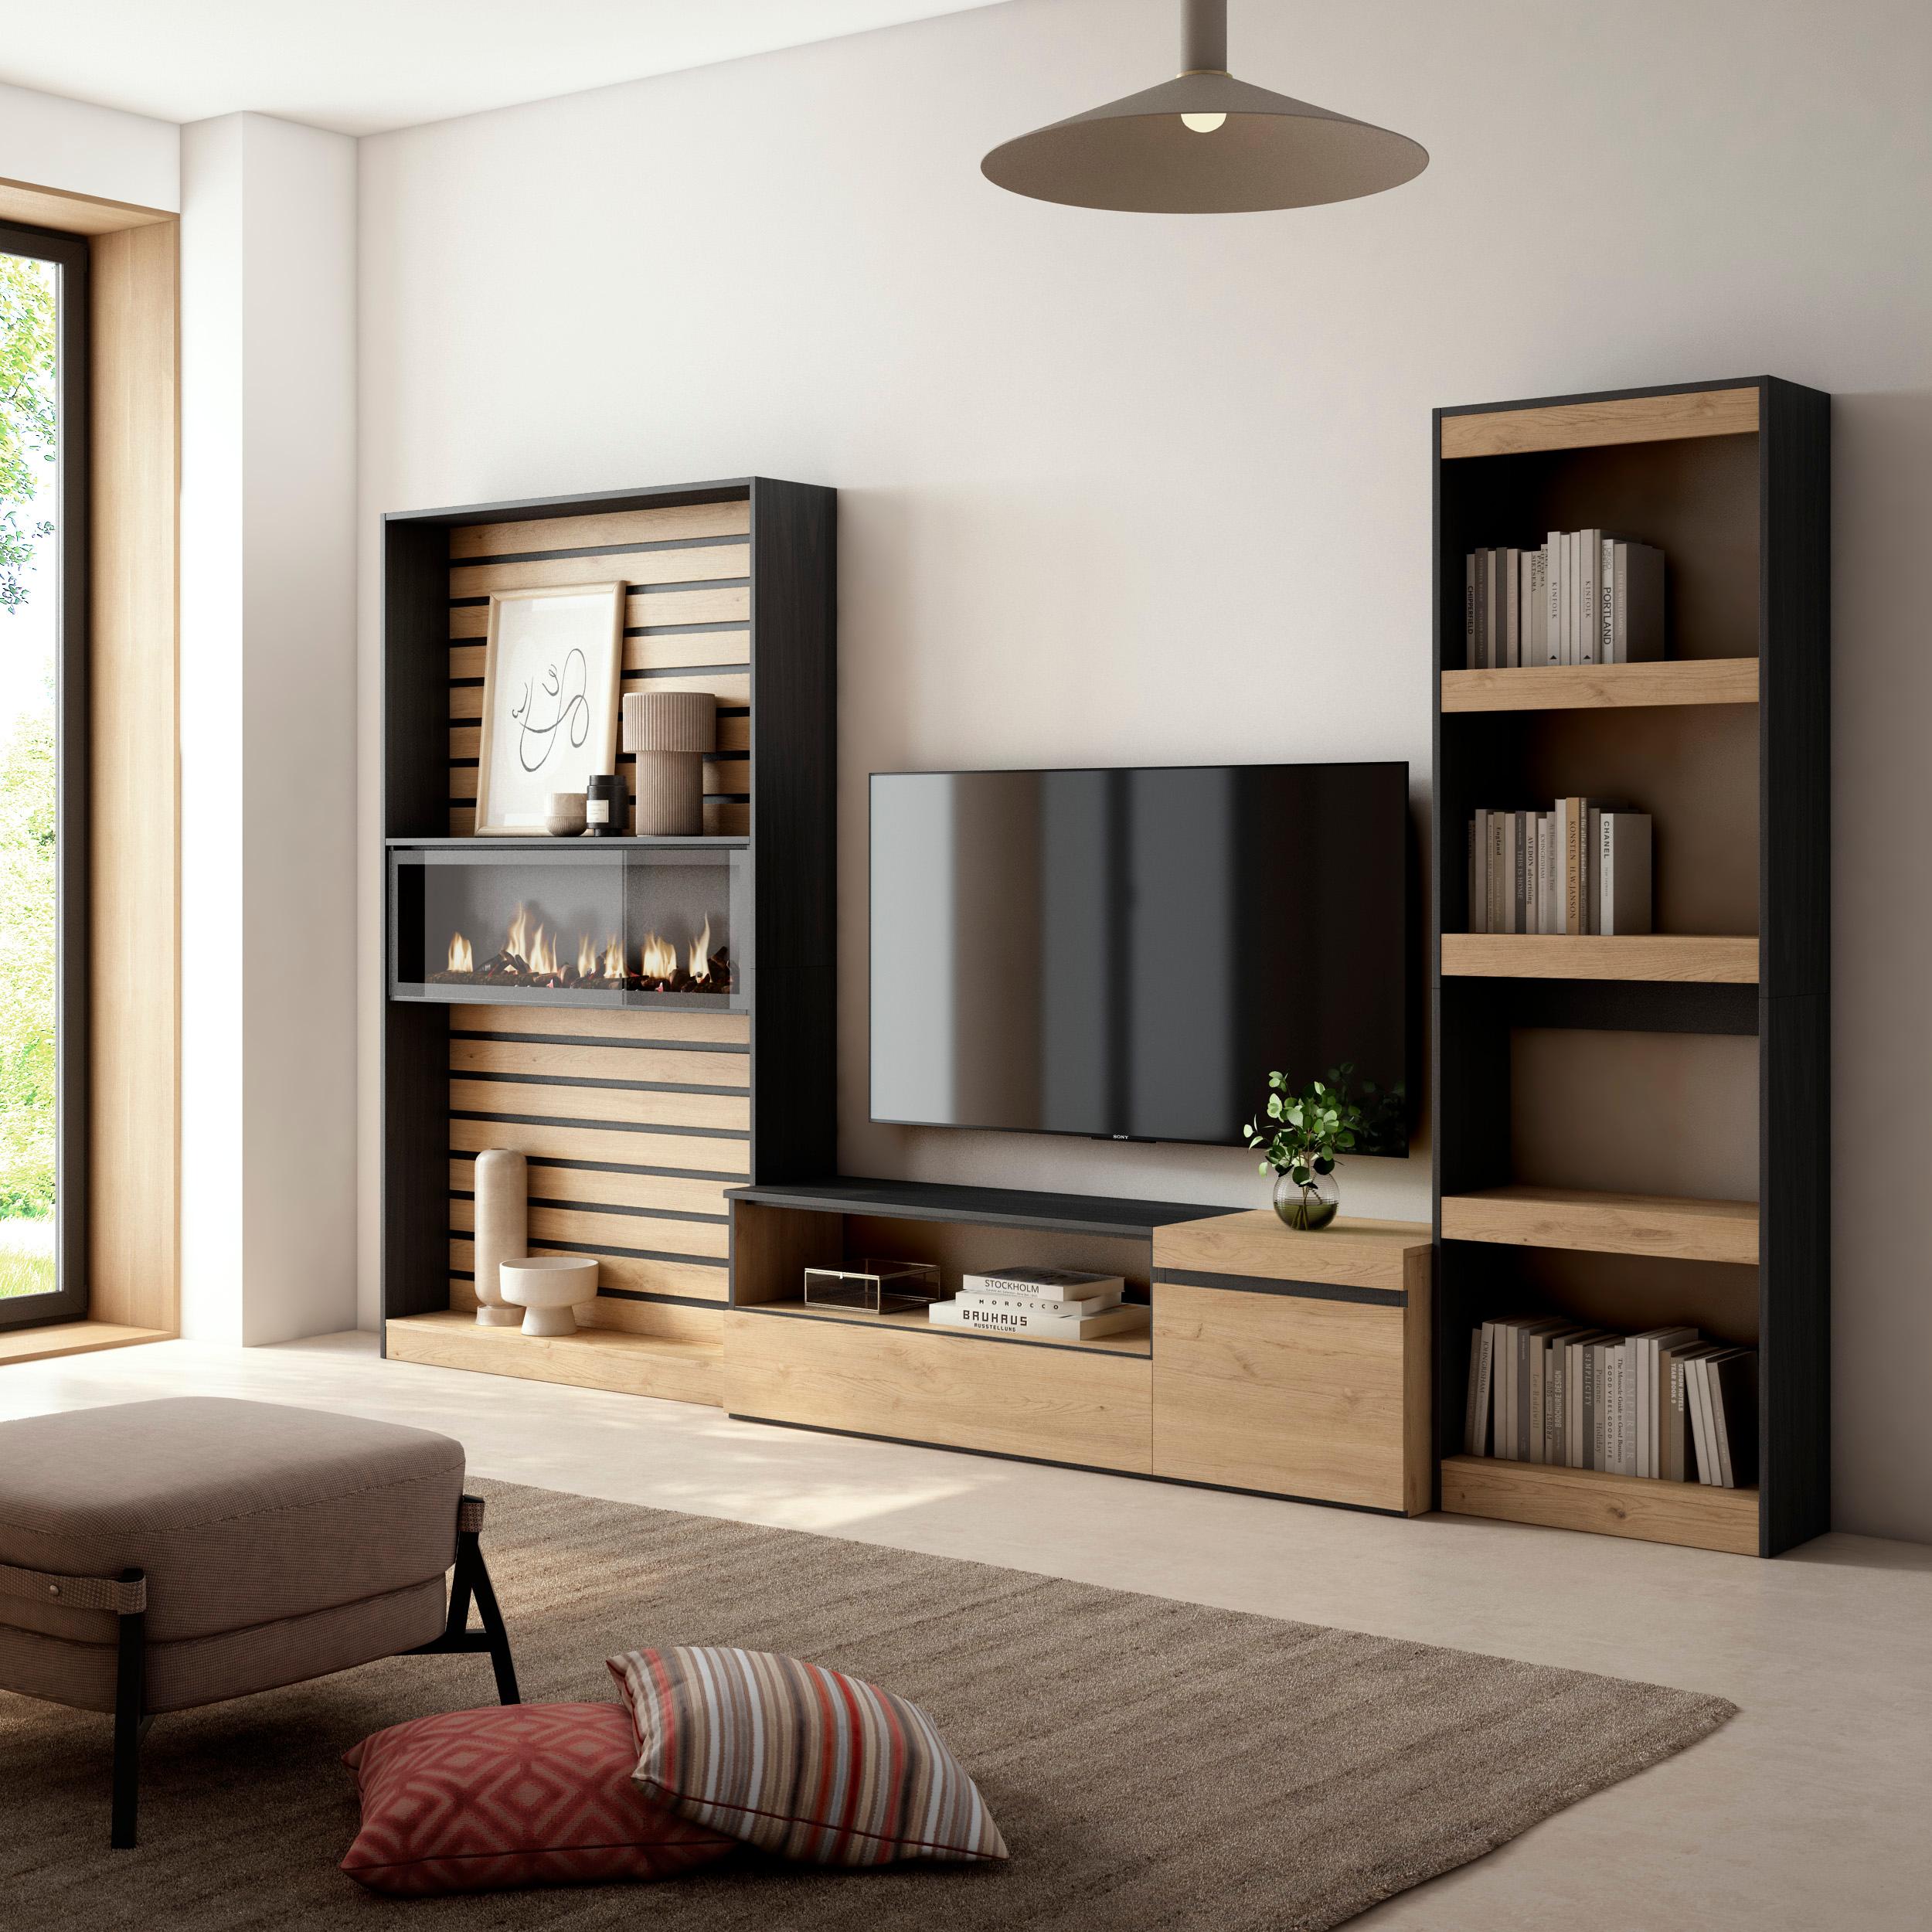 SKRAUT HOME - Skraut Home - Conjunto de muebles de Salón - Estantería - Mueble TV - Fuego led efecto 3d - Veteado de madera - Tacto poroso de alta calidad - Estilo Moderno